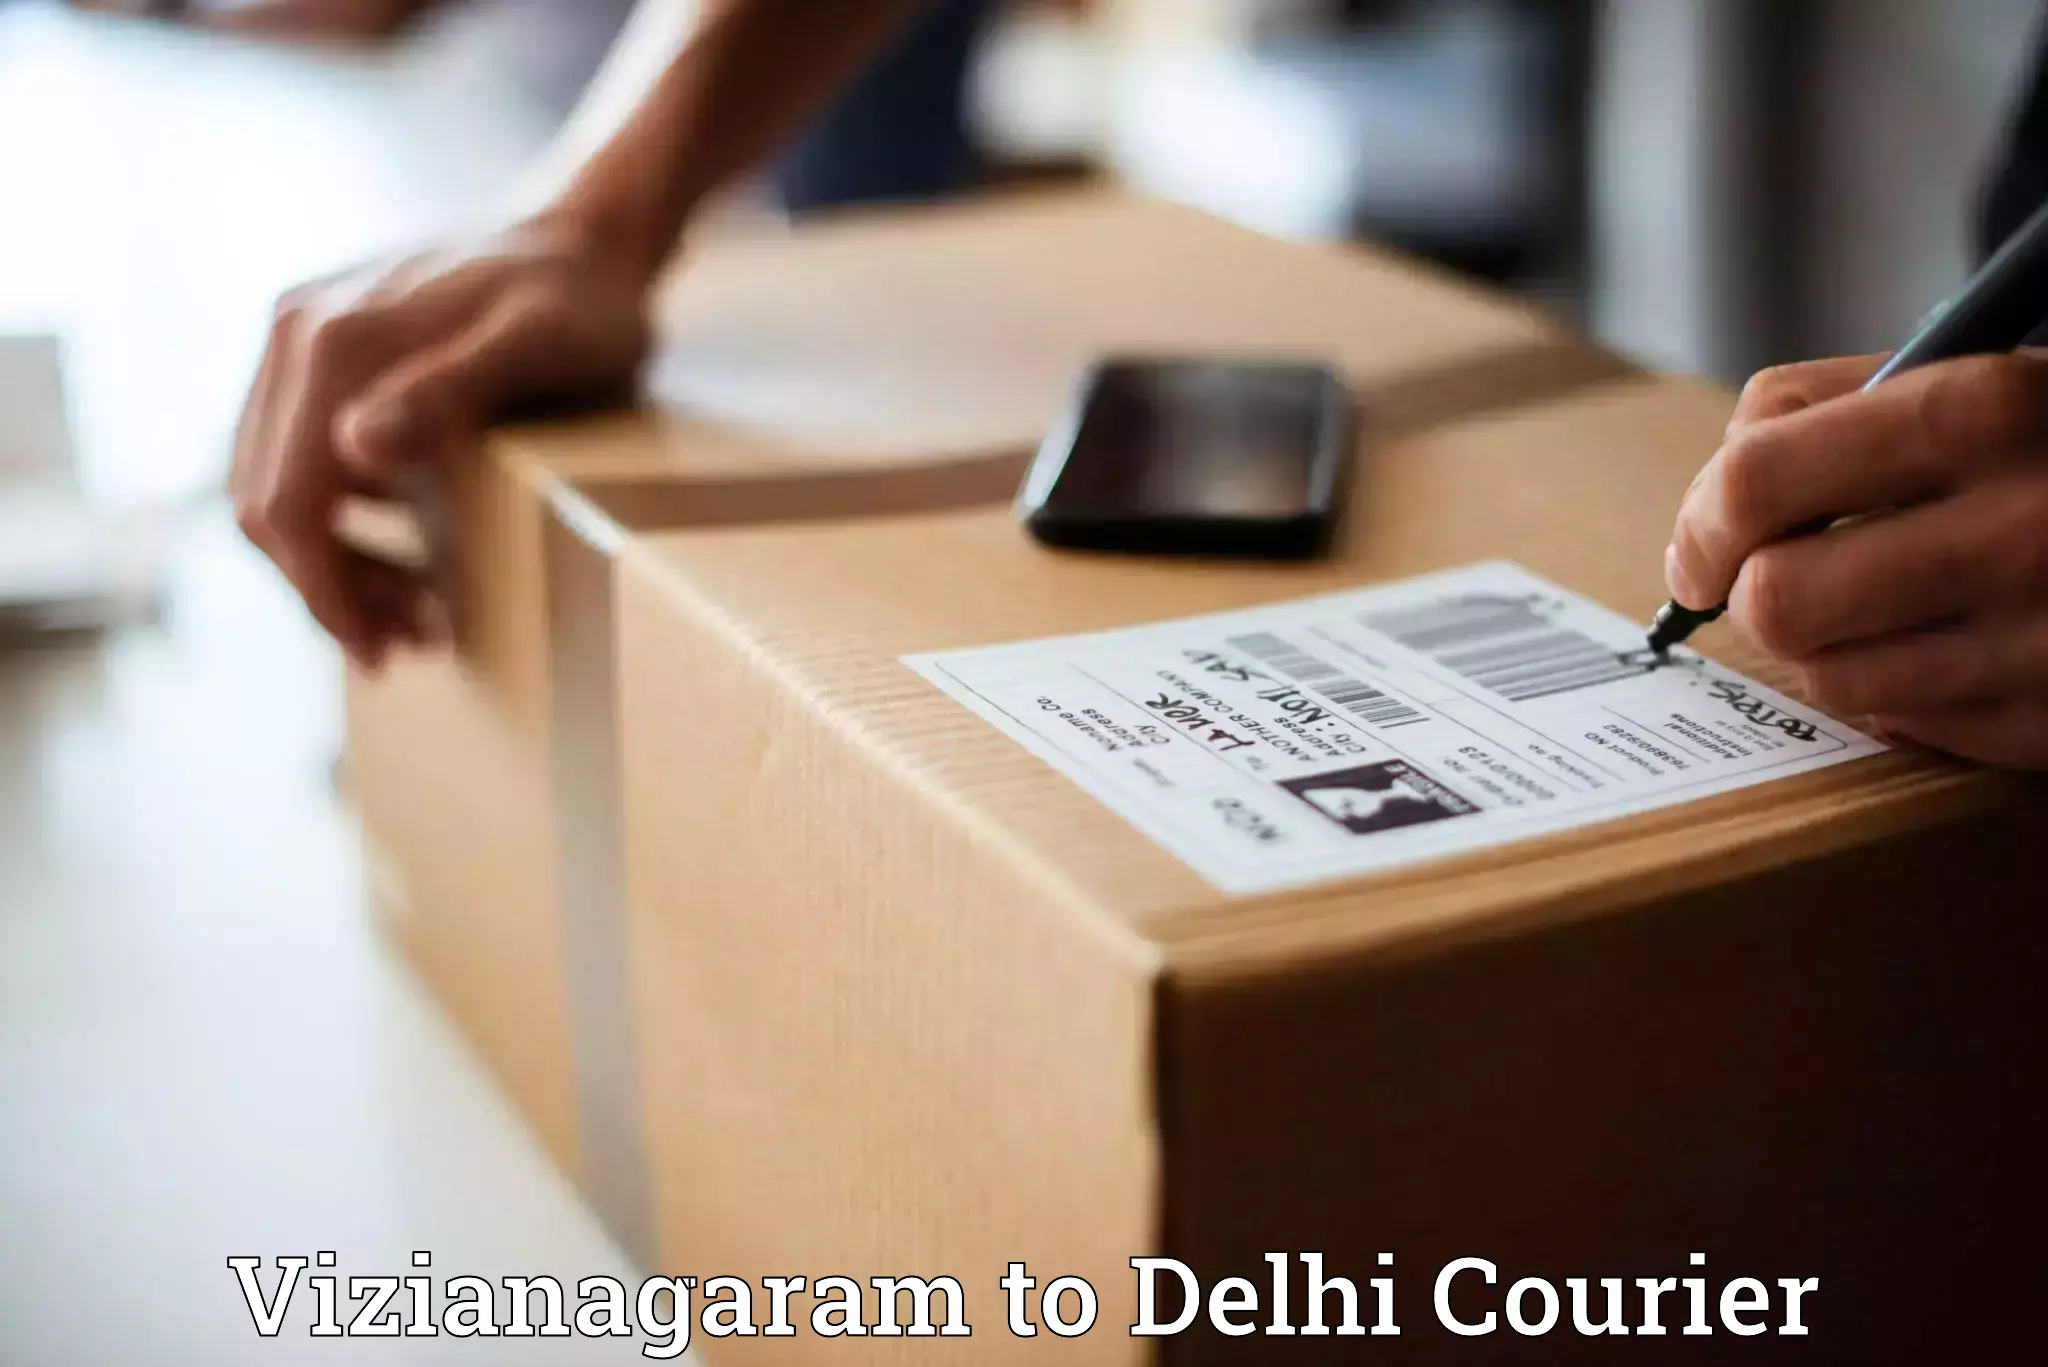 Secure freight services Vizianagaram to IIT Delhi